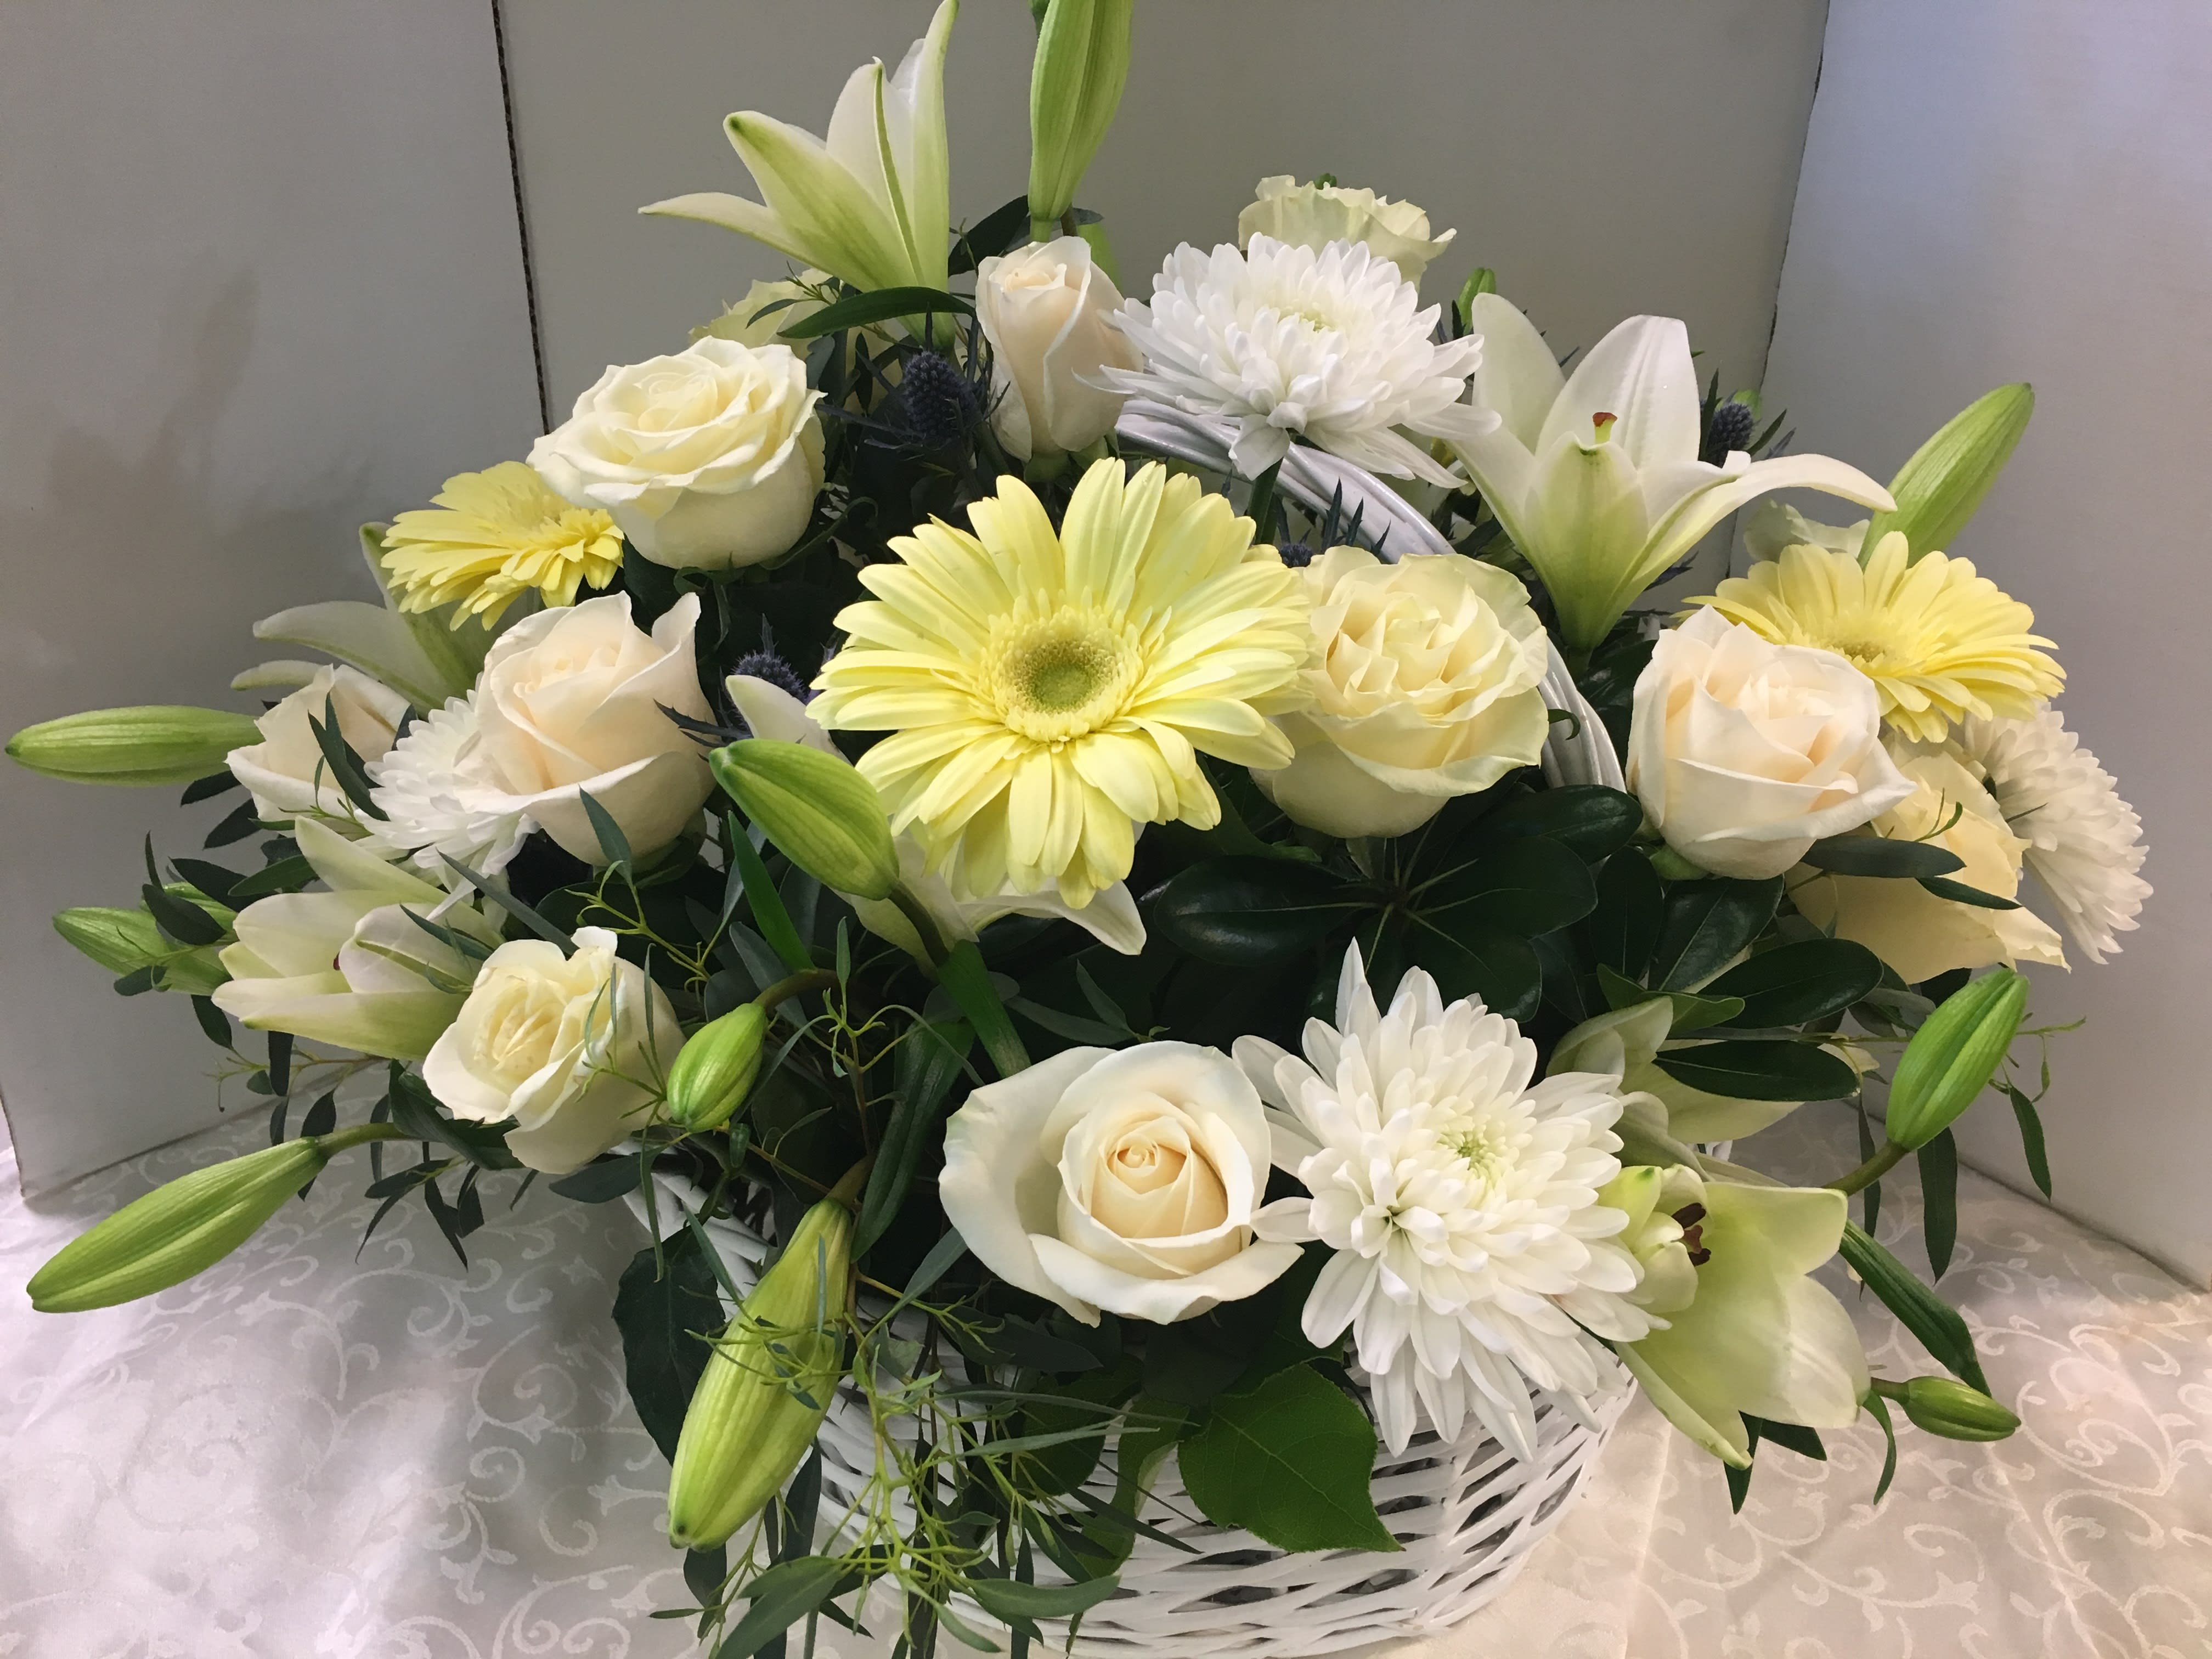 White Basket - White Roses, Gerbera Daisies, White Lilies, White Cremones